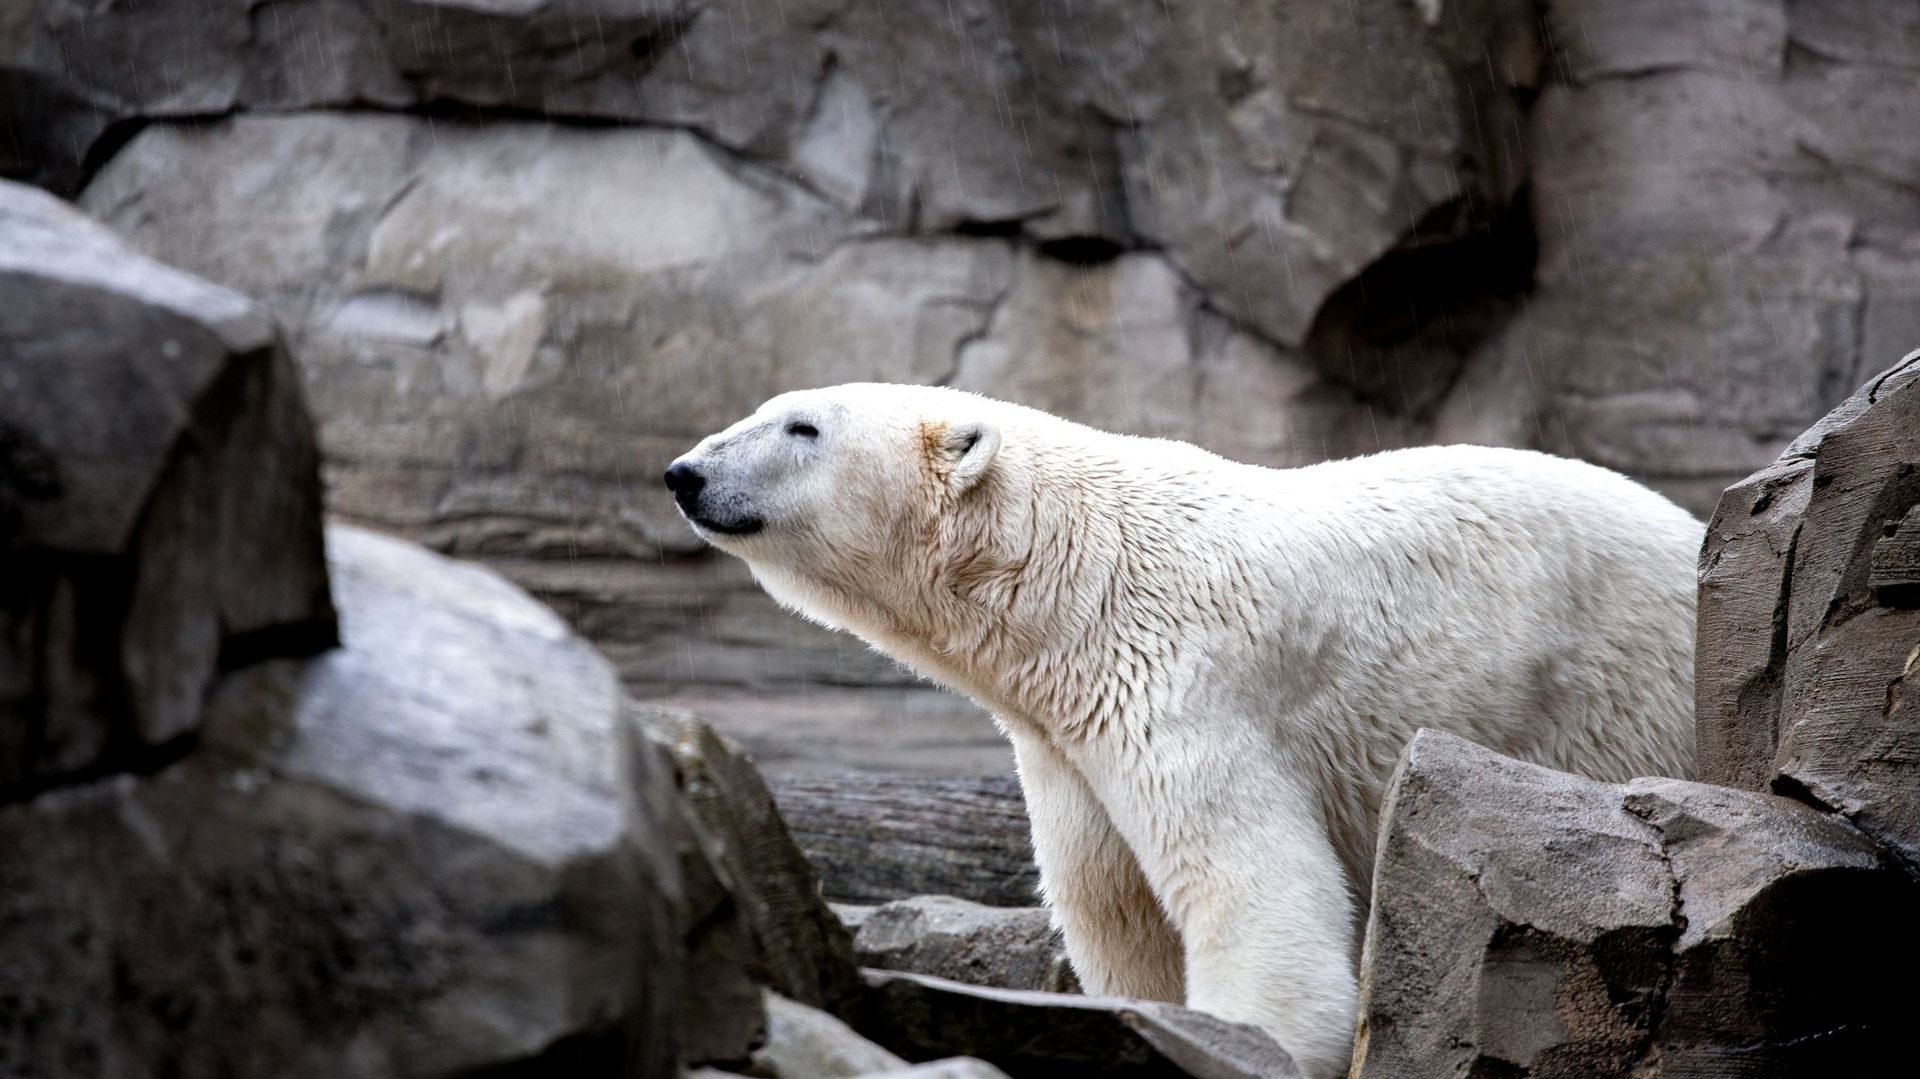 Image d'illustration - La plus vieille ourse polaire d'Europe s'est éteinte dans un zoo berlinois